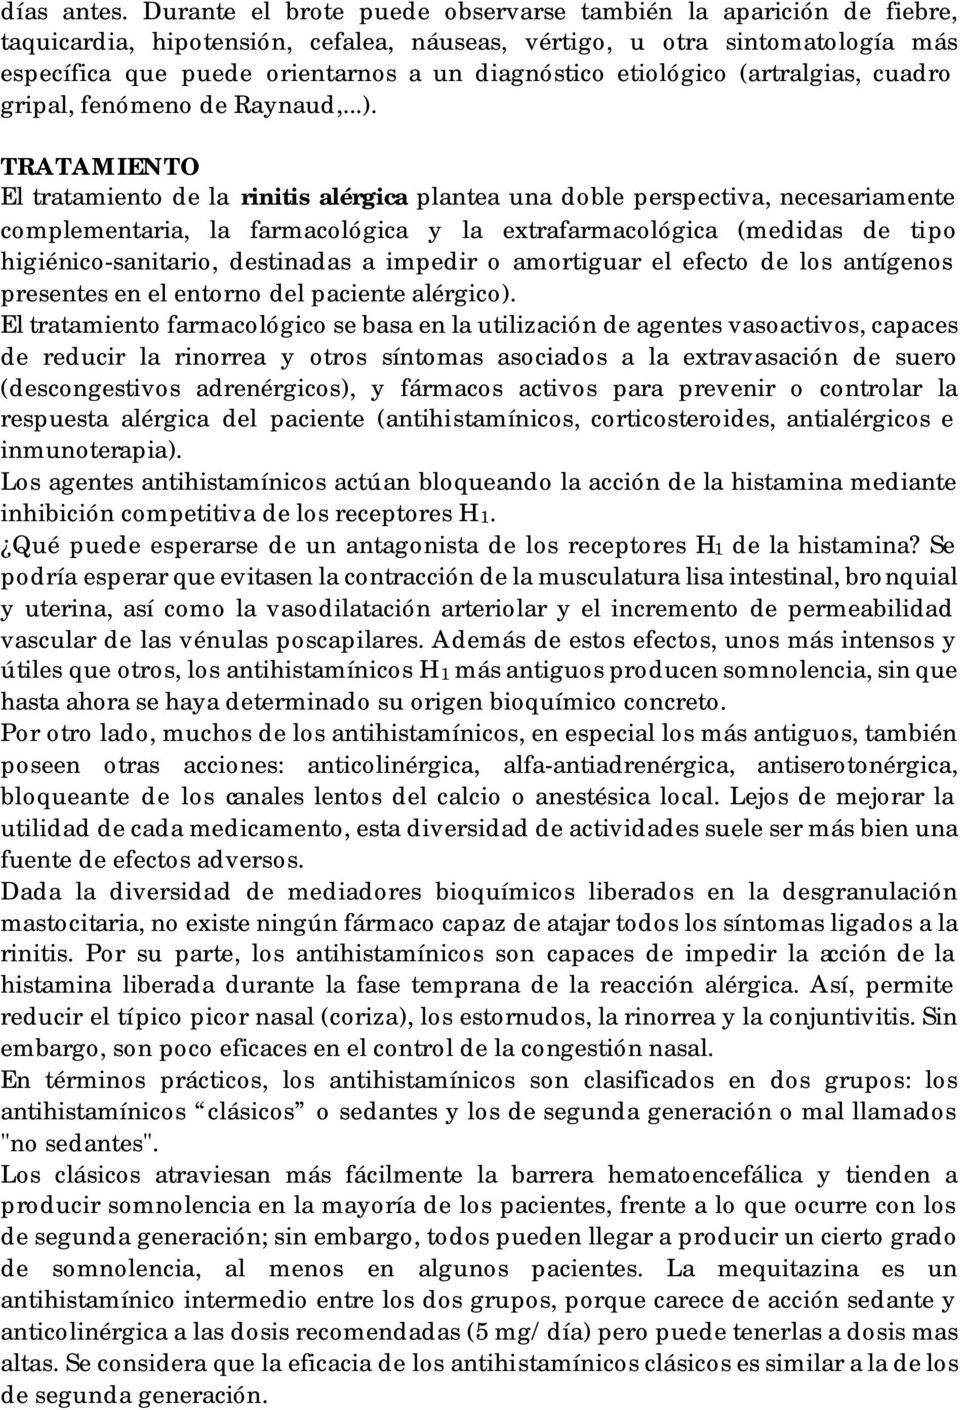 etiológico (artralgias, cuadro gripal, fenómeno de Raynaud,...).